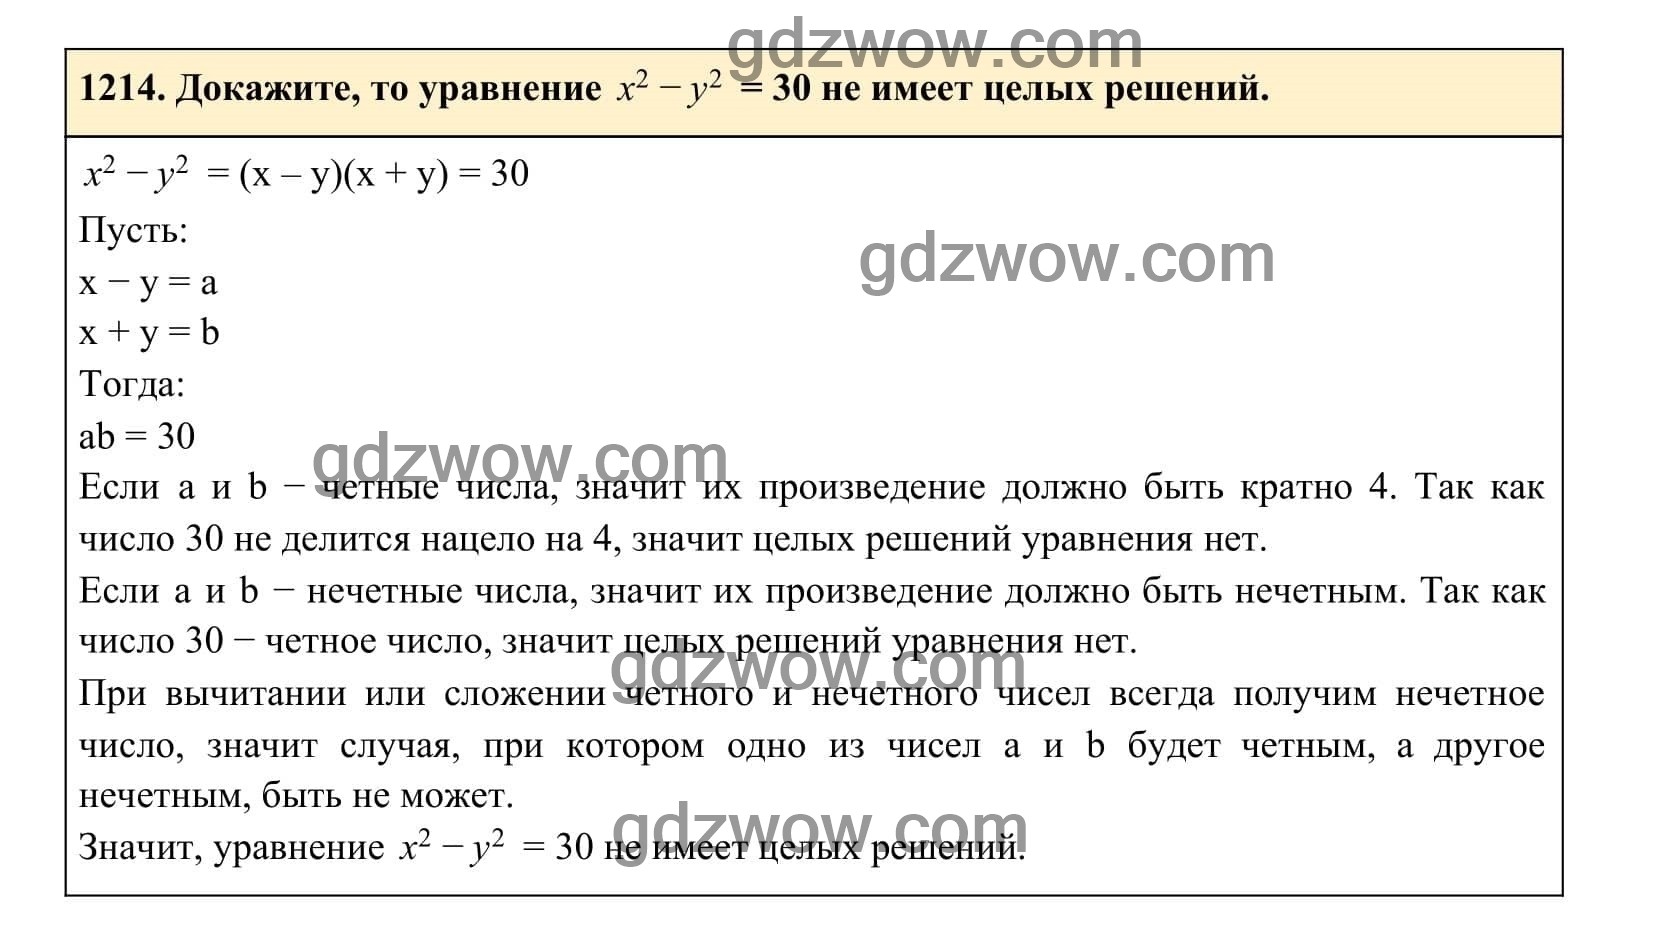 Упражнение 1214 - ГДЗ по Алгебре 7 класс Учебник Макарычев (решебник) - GDZwow